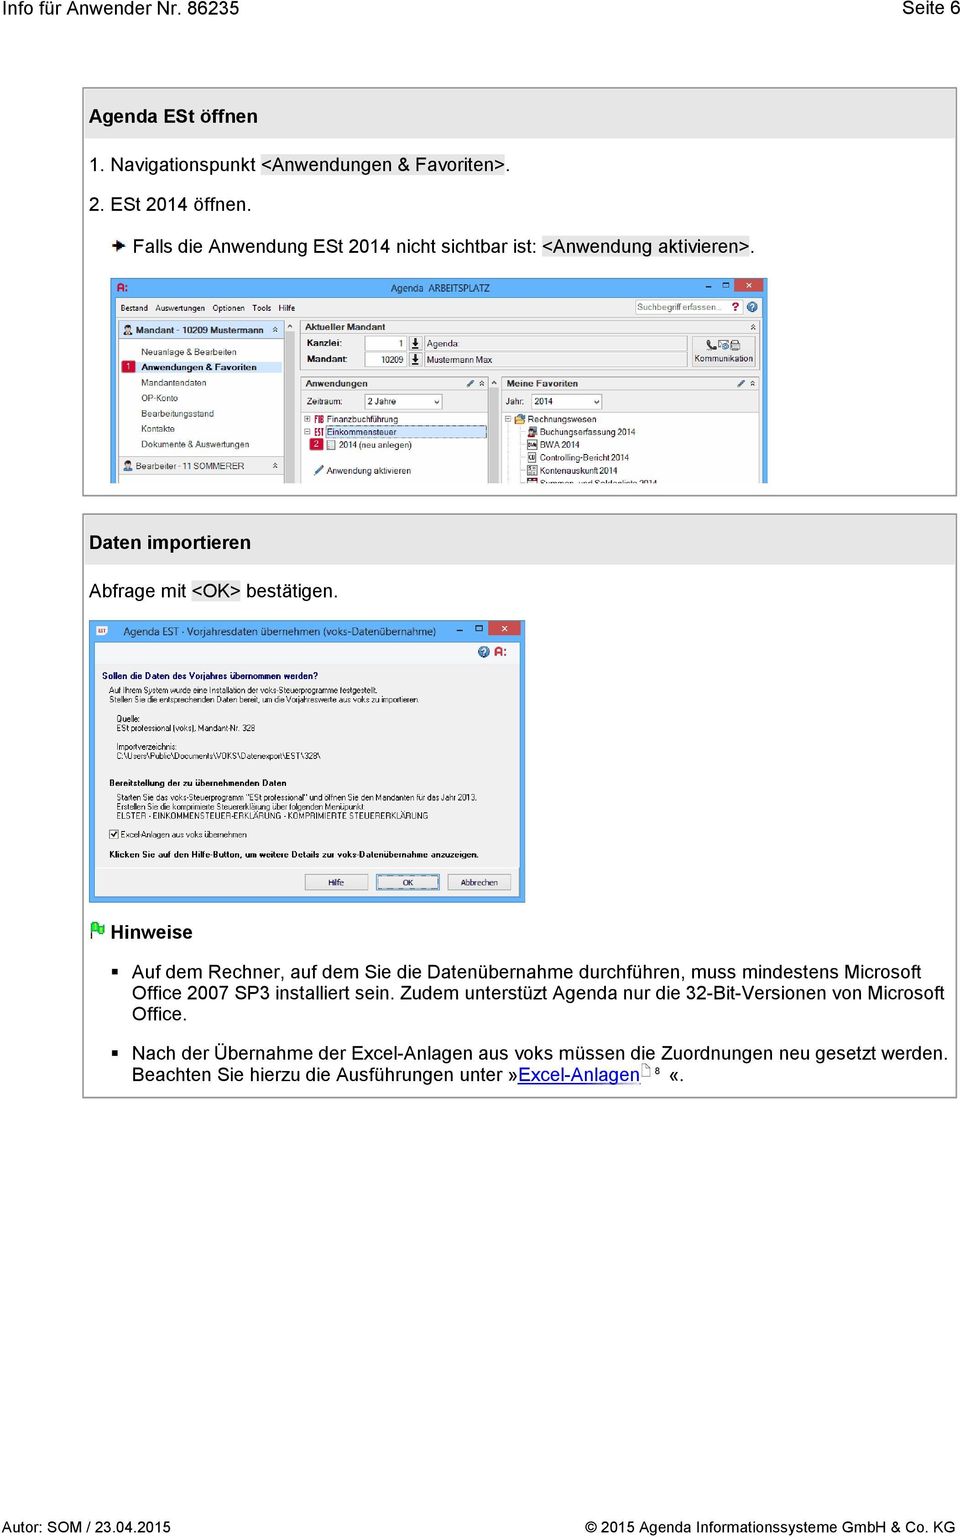 Hinweise Auf dem Rechner, auf dem Sie die Datenübernahme durchführen, muss mindestens Microsoft Office 2007 SP3 installiert sein.